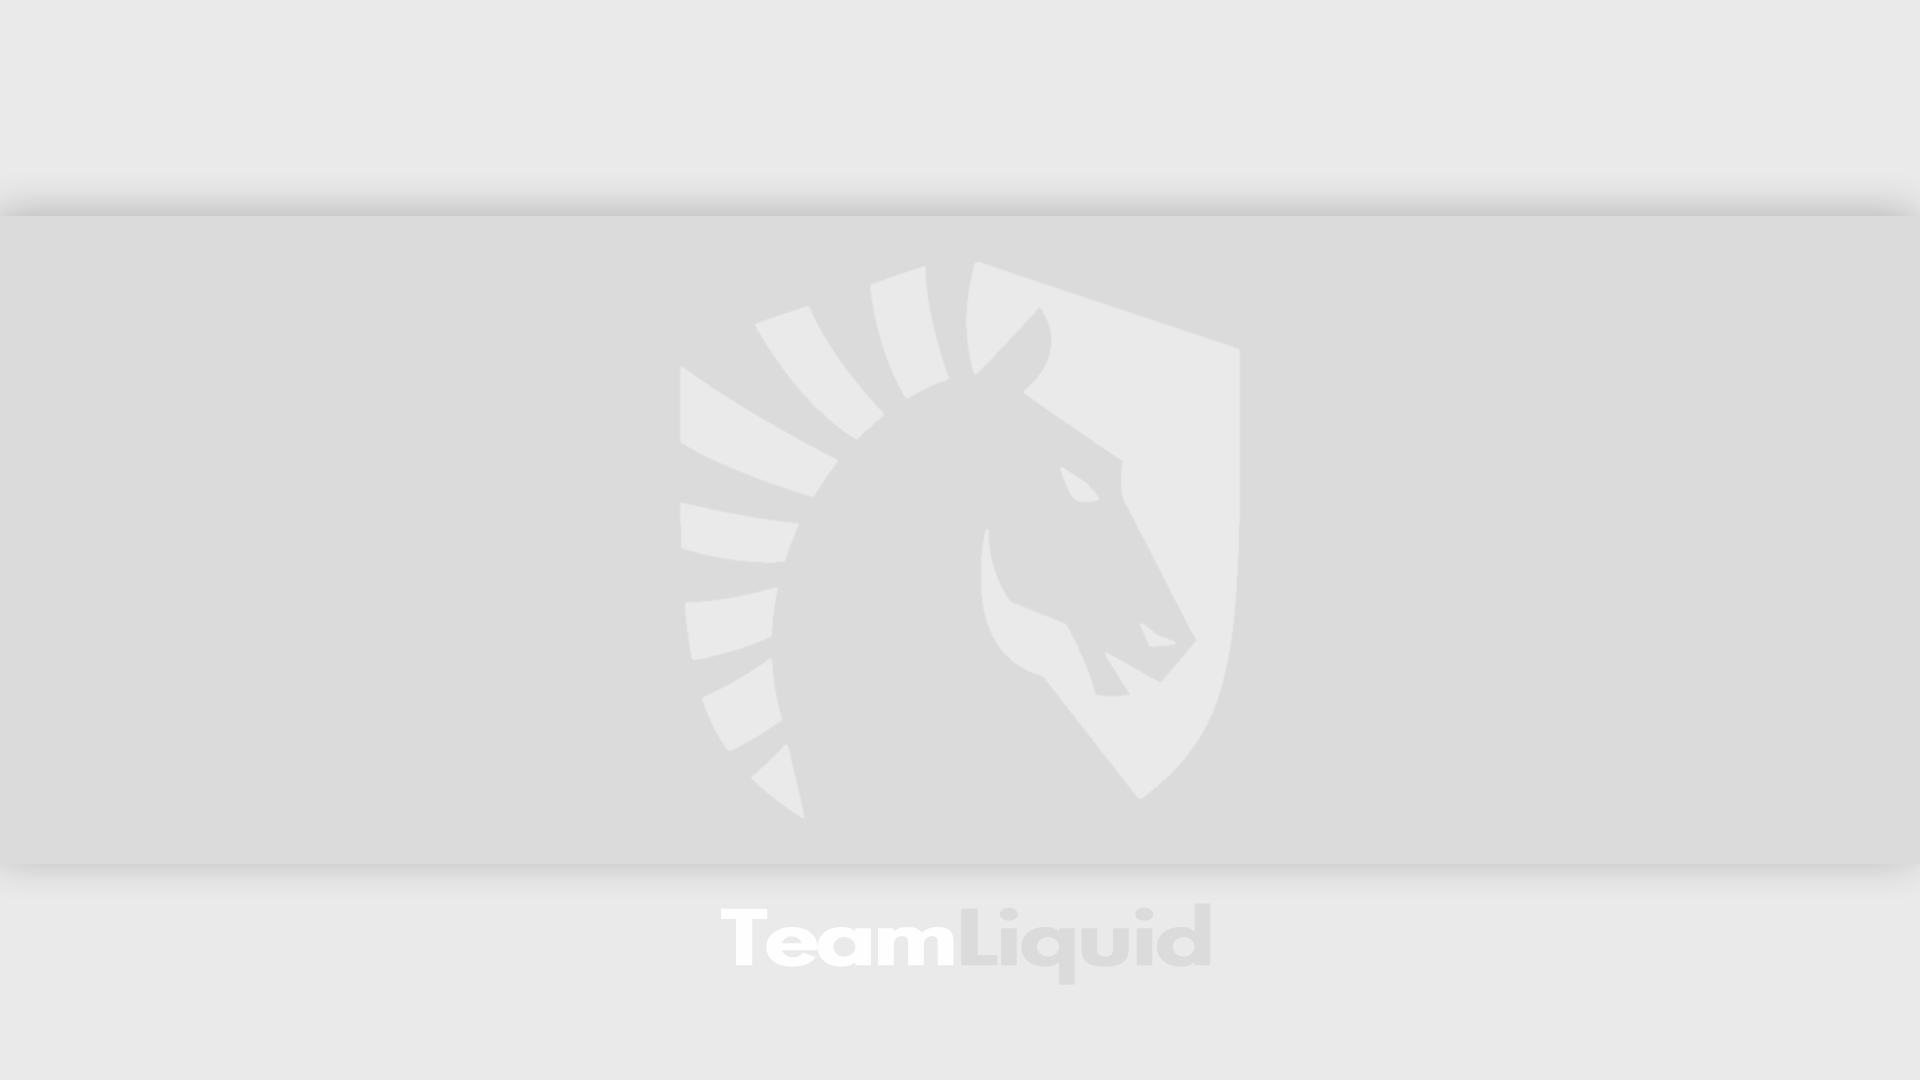 abstract, minimalistic, horses, Team Liquid, StarCraft II - desktop wallpaper